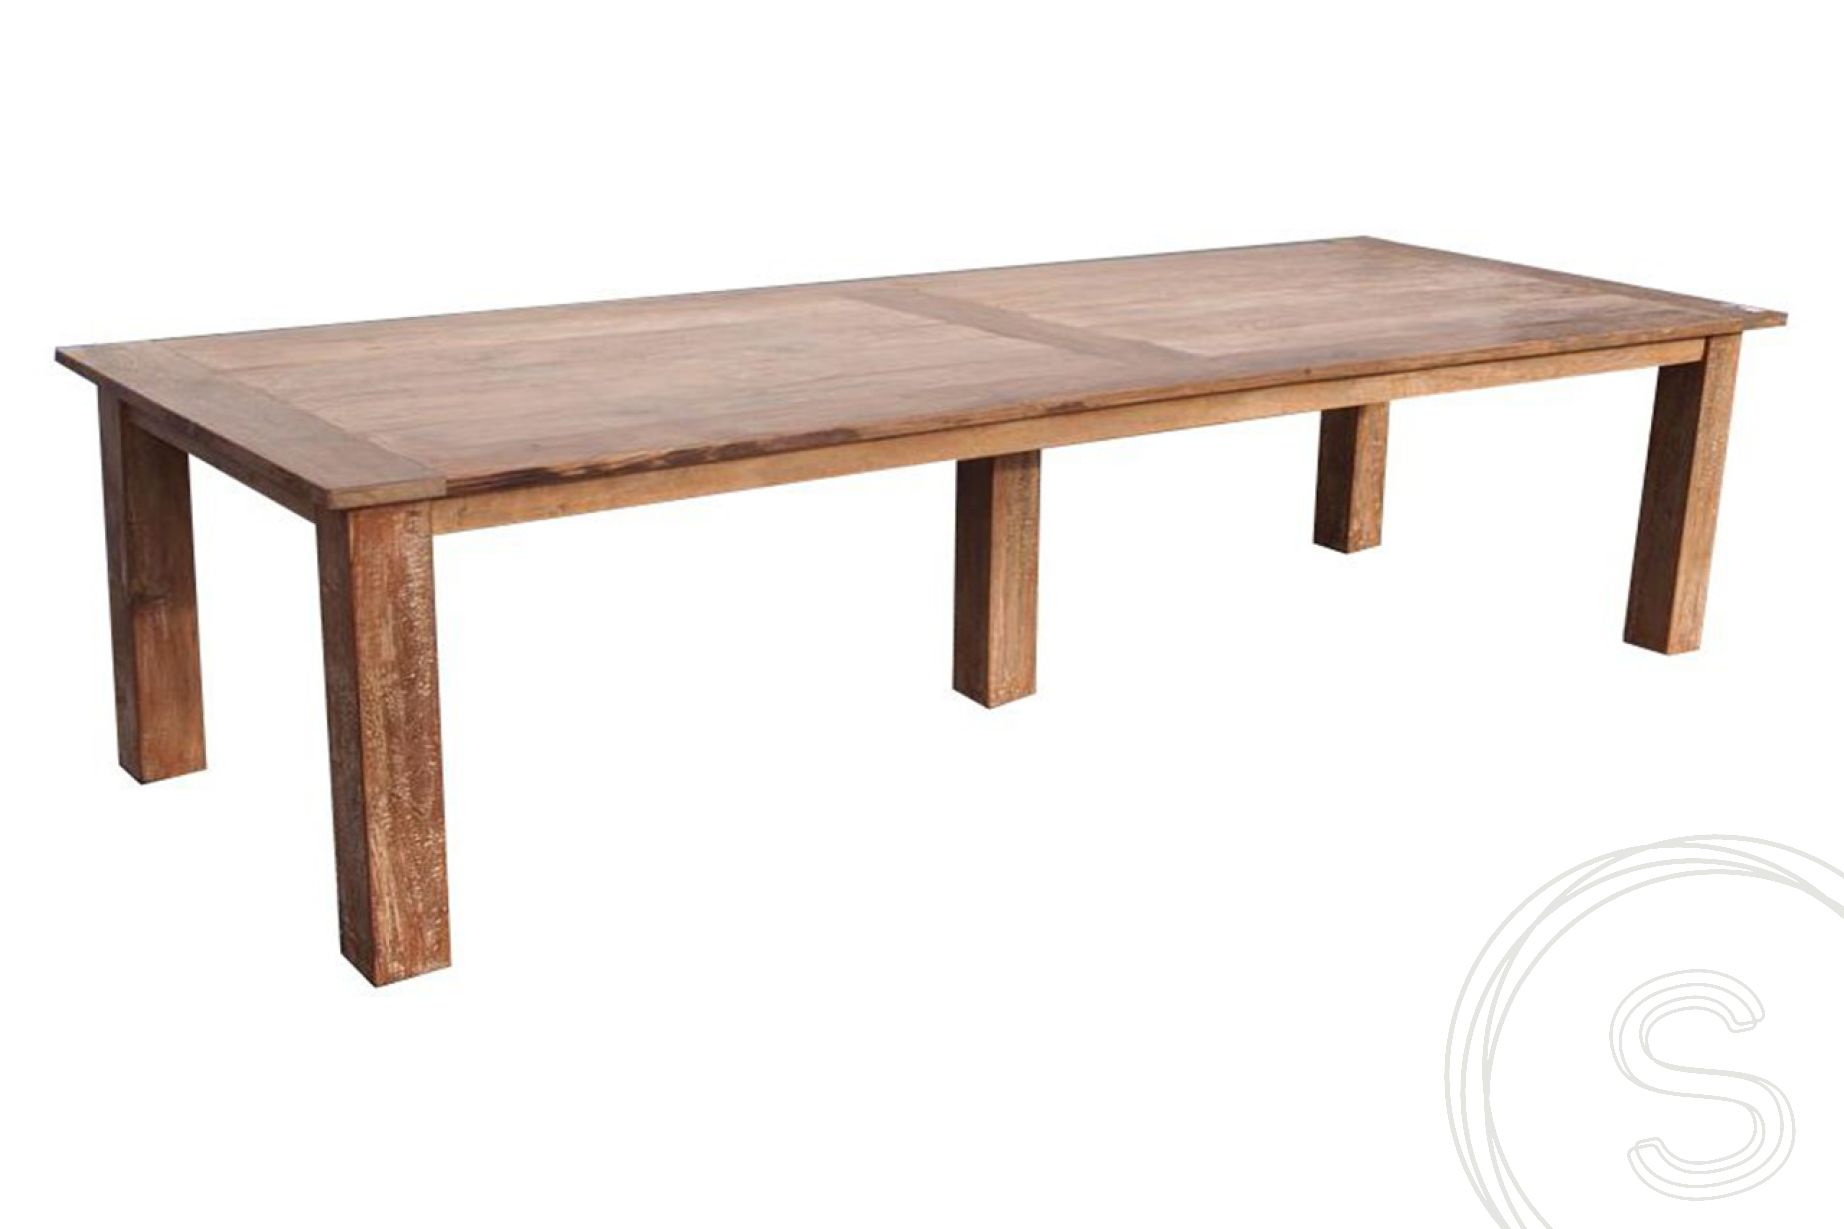 schraper Beknopt Voetzool Teak tafel oud hout 320 x 120